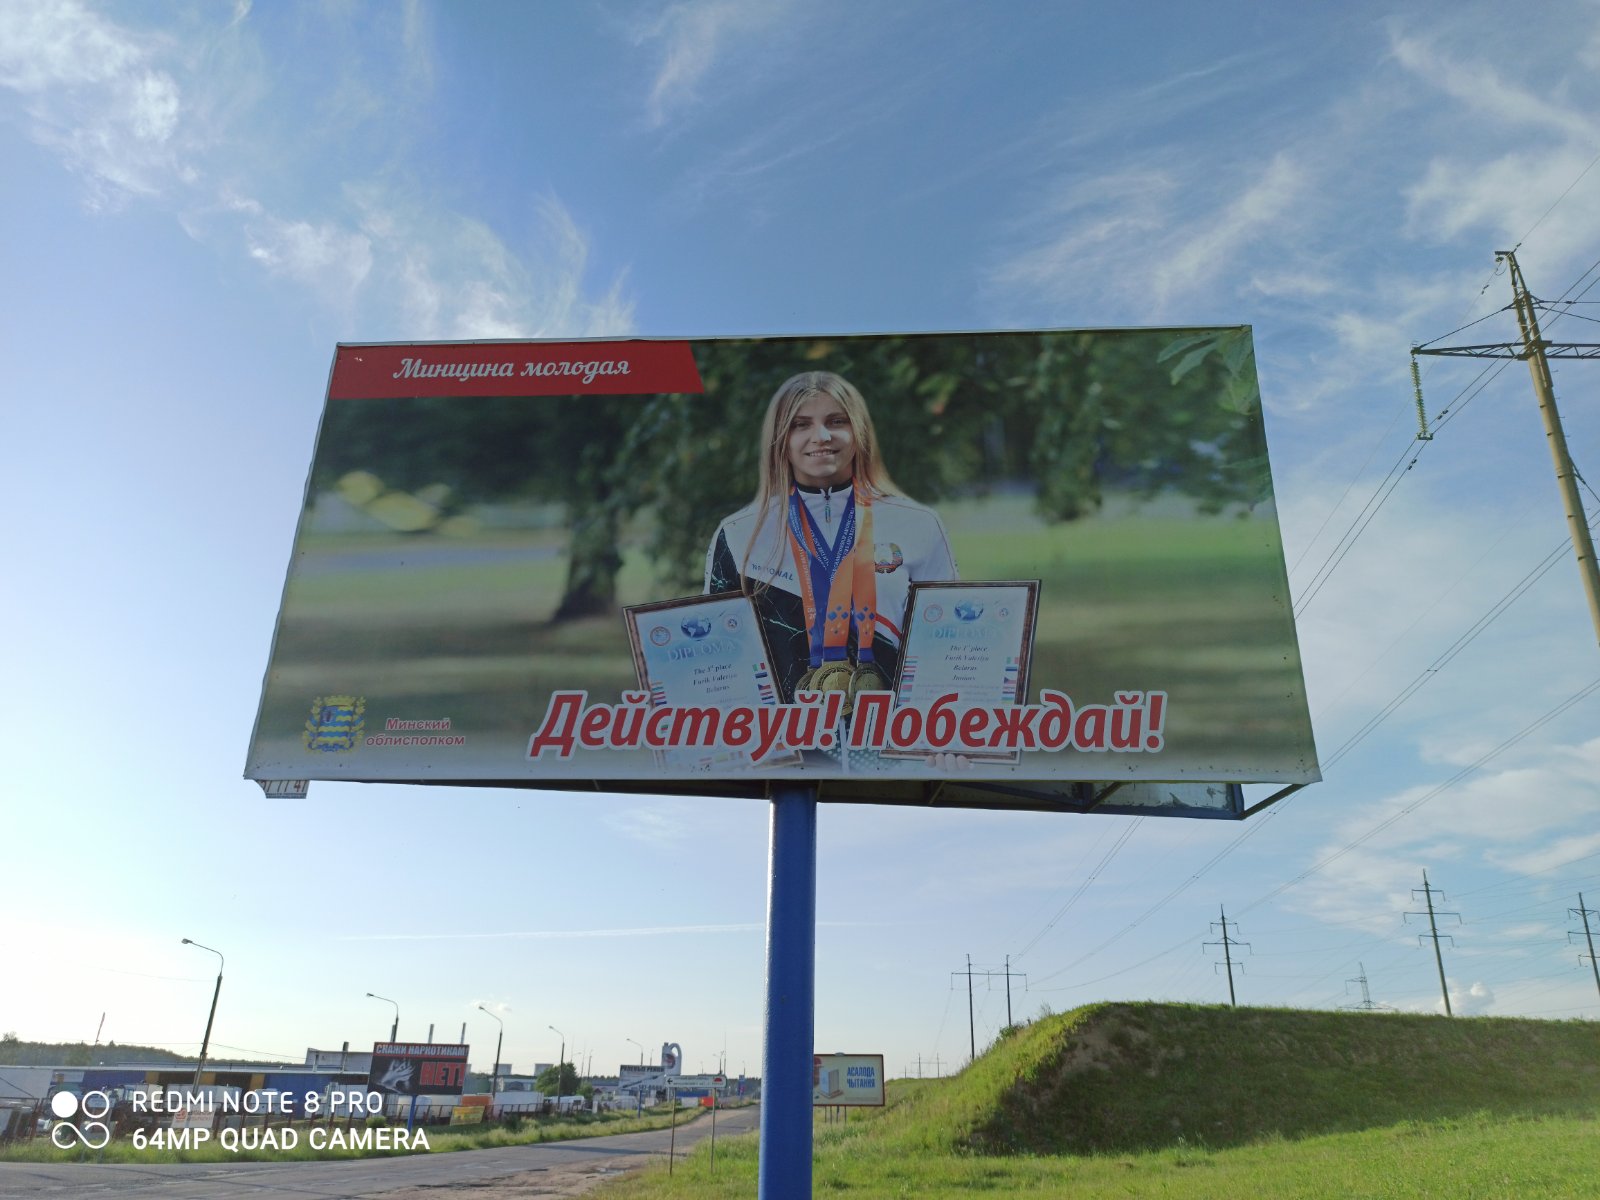 В Минской области установили билборд с Валерией Фурик - чемпионом мира по пожарно-спасательному спорту